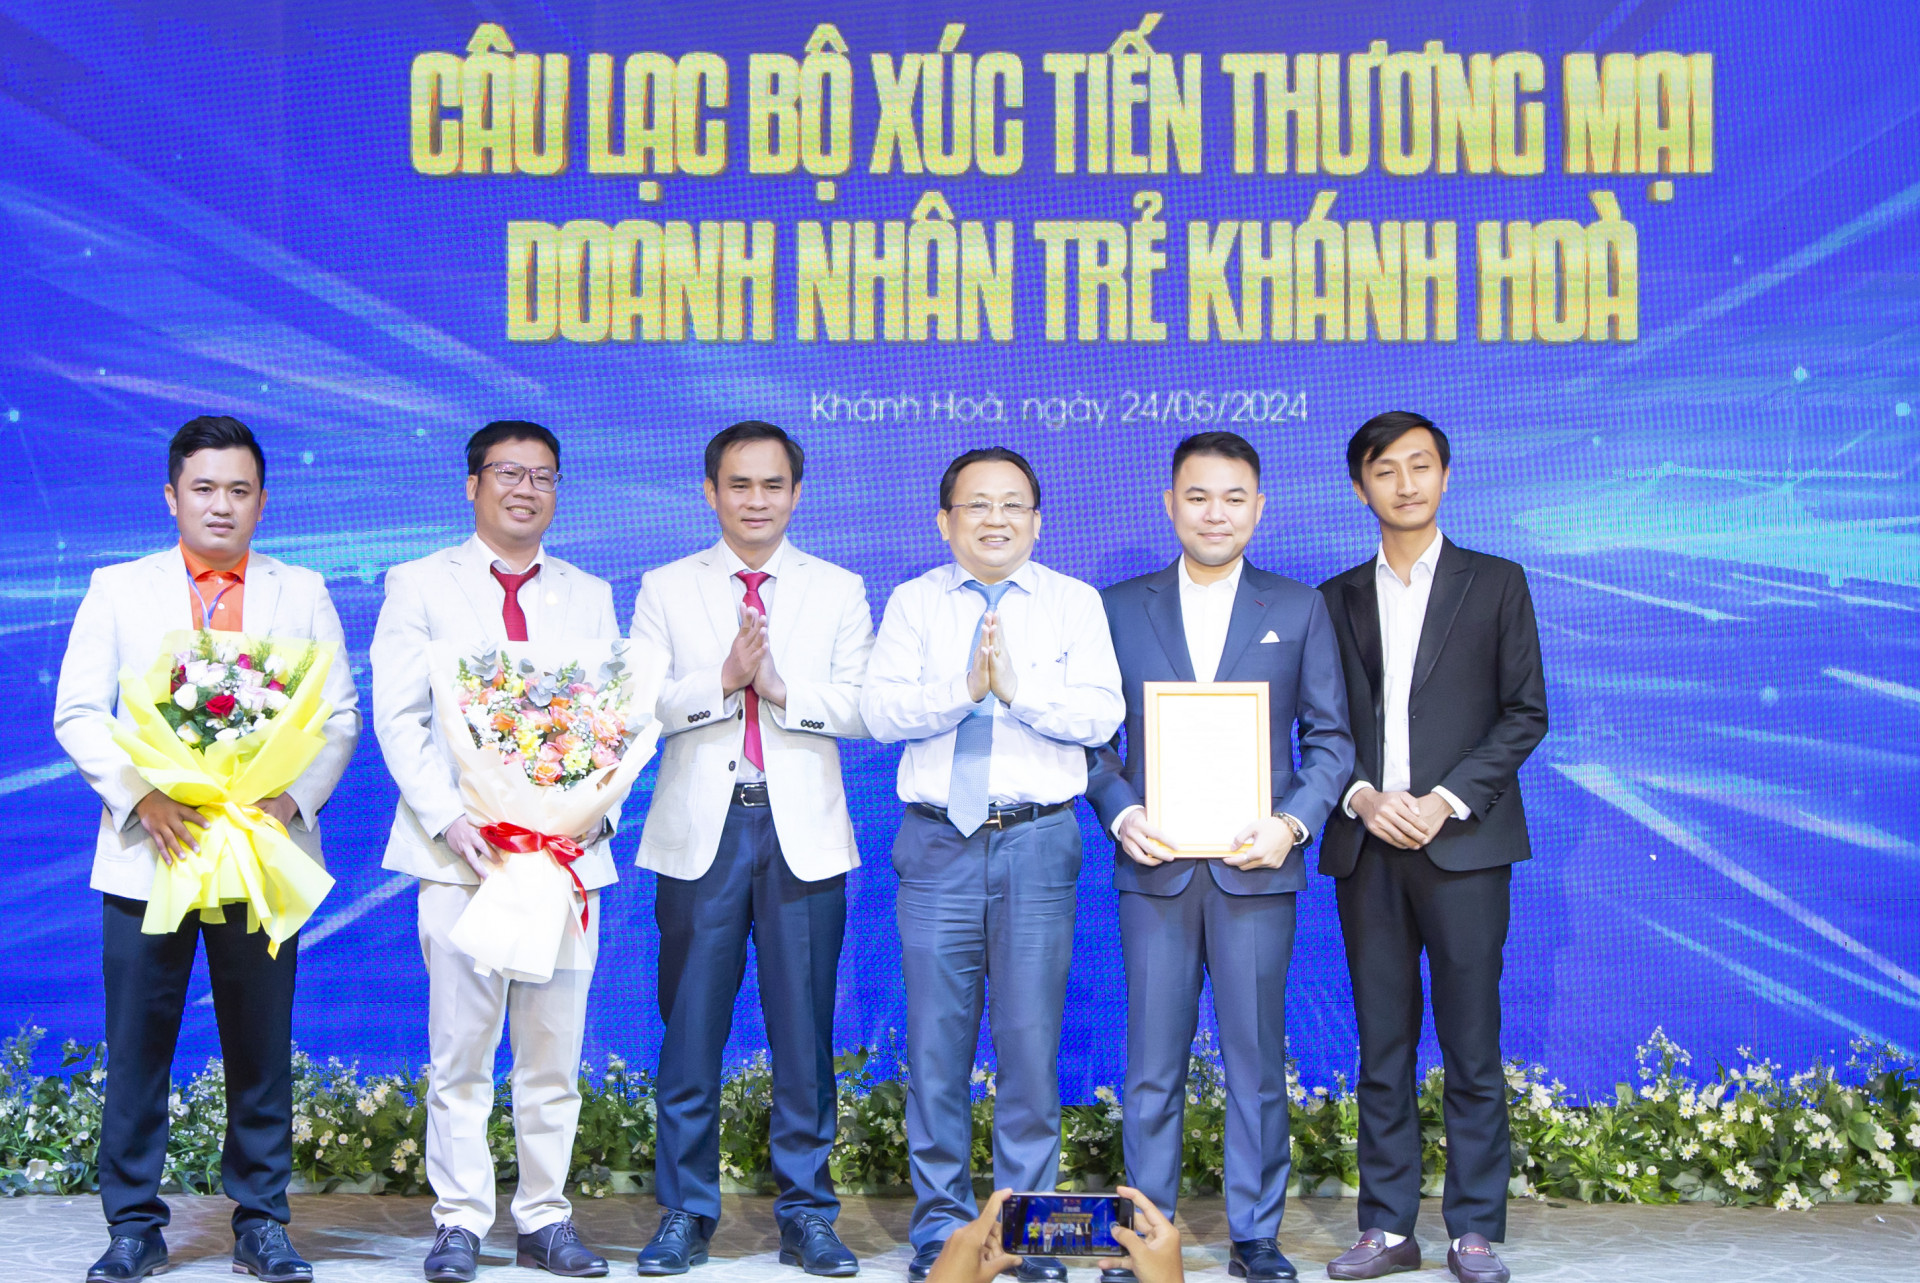 Ra mắt Câu lạc bộ Xúc tiến Thương mại và Đầu tư Doanh nhân trẻ Khánh Hòa.

